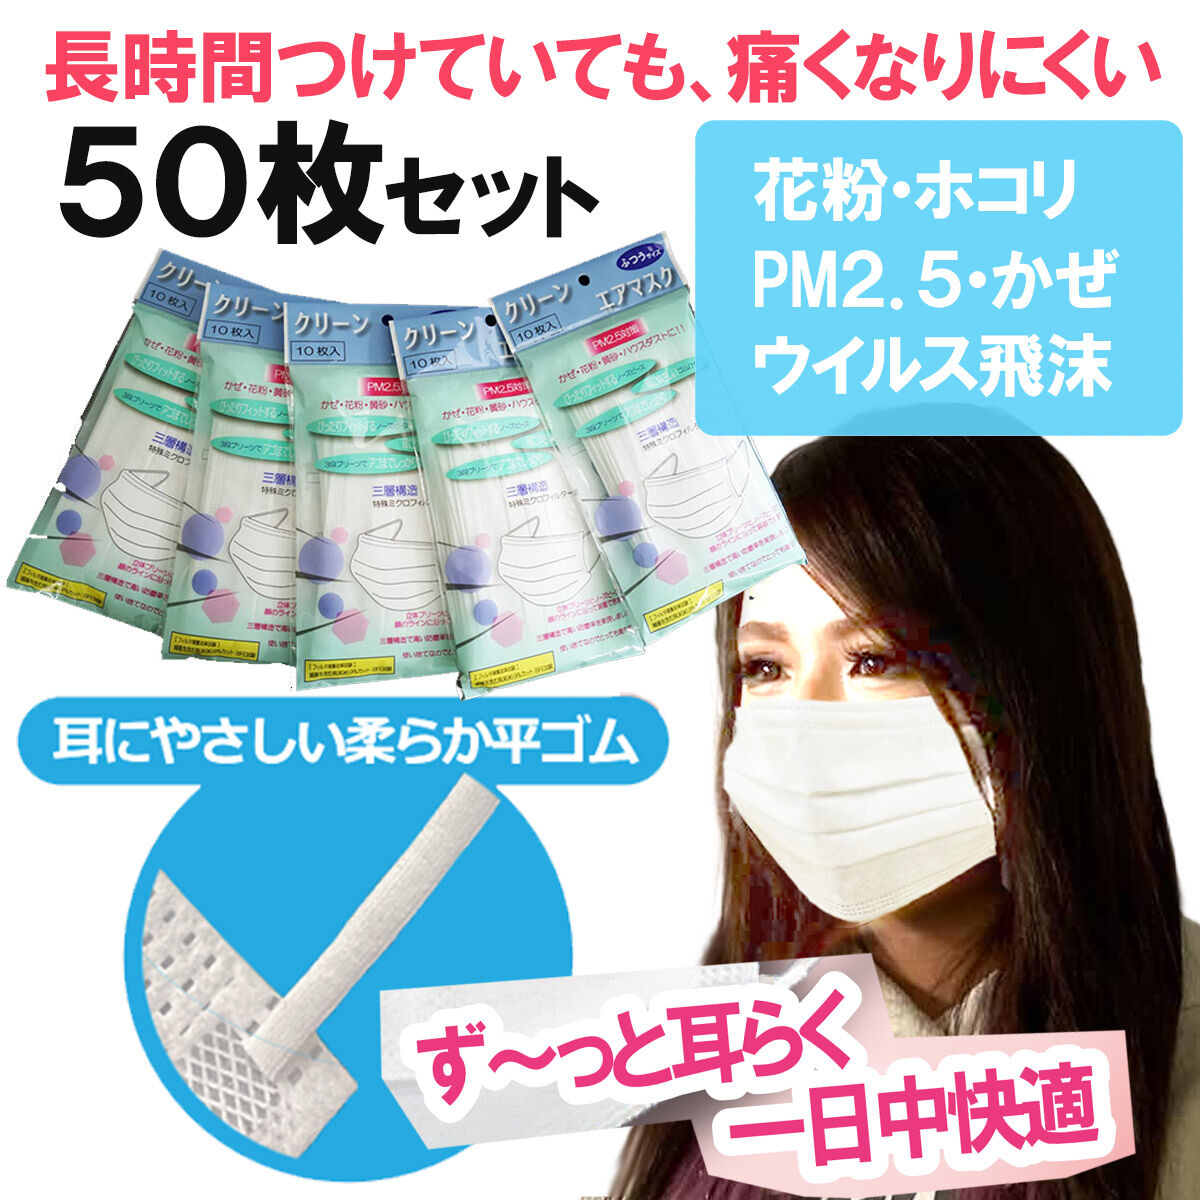 マスク 50枚 クリーンエアマスク10枚入り×5セット(計50枚)全国一律送料無料 ウイルス対策 花粉対策 風邪予防 不織布 使い捨て 10個包装  @ST50-mask